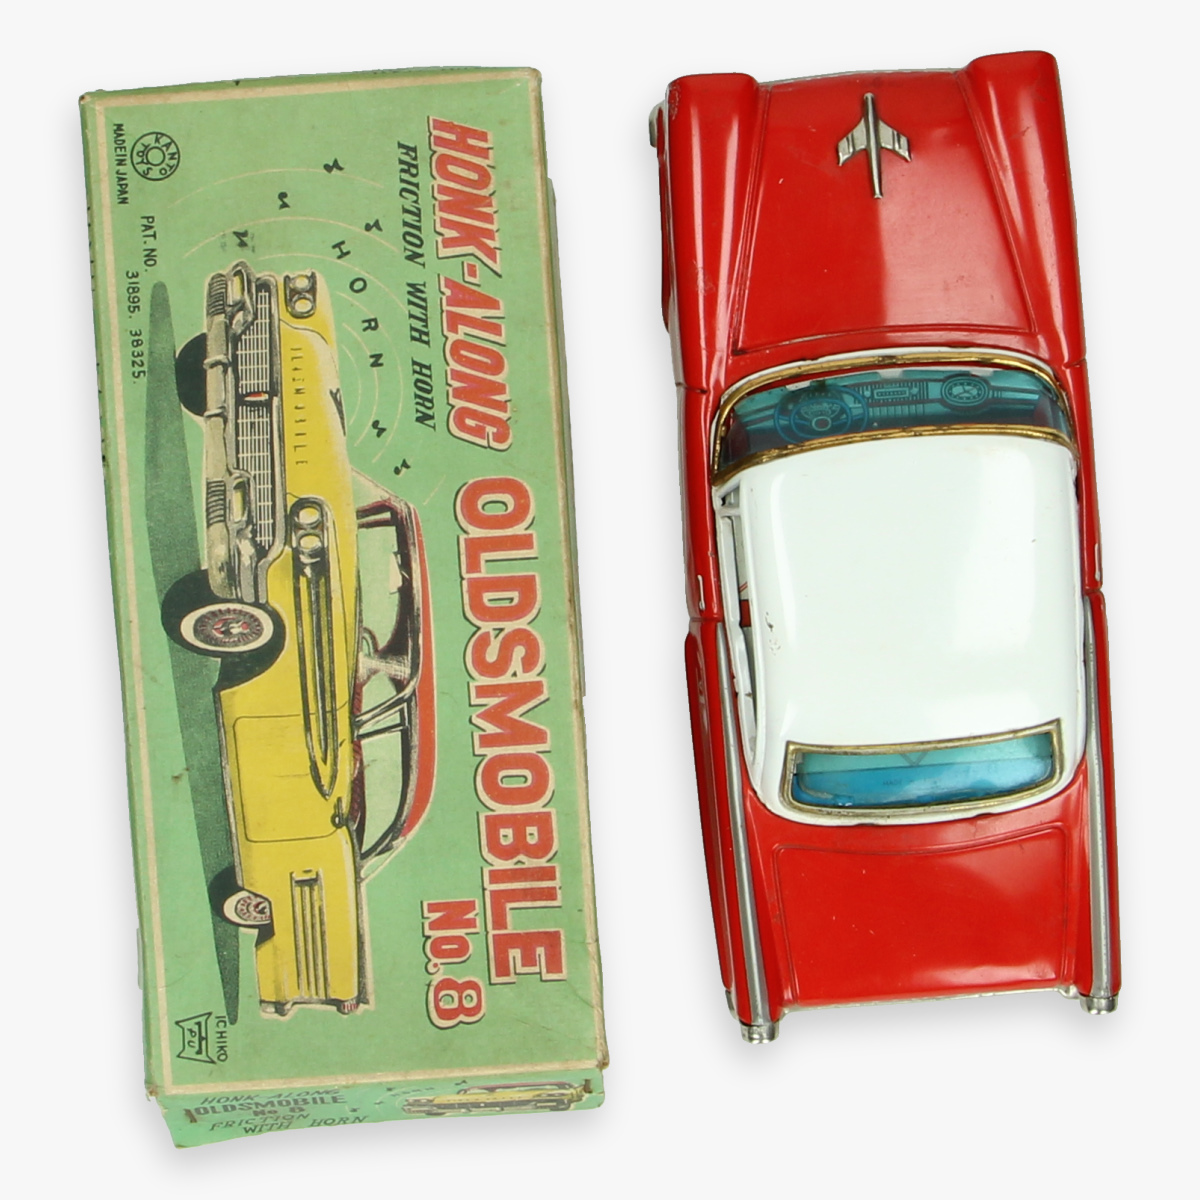 Afbeeldingen van honk along oldsmobile tin toy mib. jaren 50 ichiko made in Japan